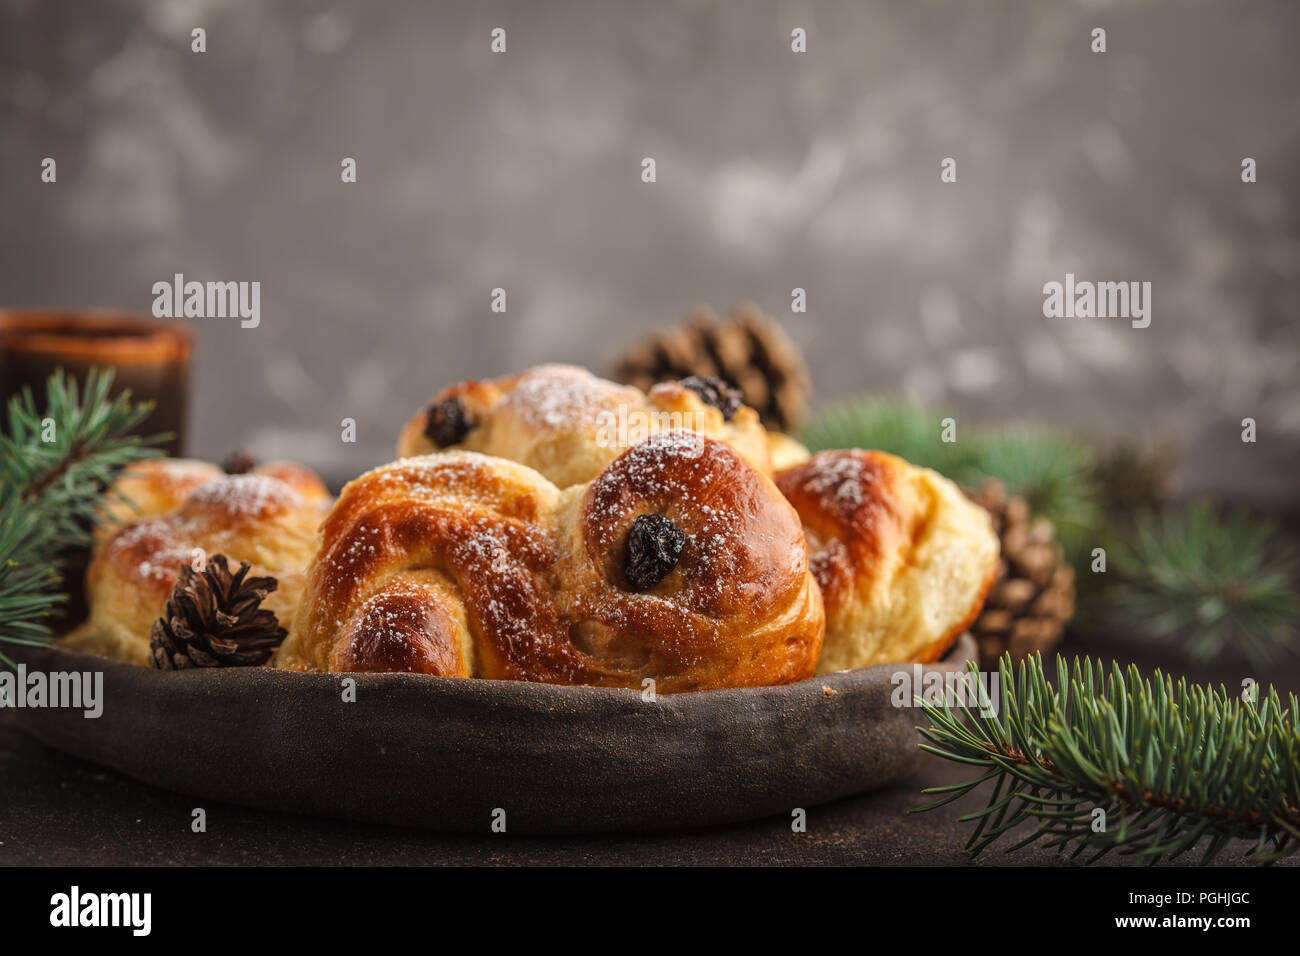 Noël suédois traditionnel (petits pains au safran ou lussebulle lussekatt). Noël suédois. Fond sombre, décoration de Noël. Banque D'Images